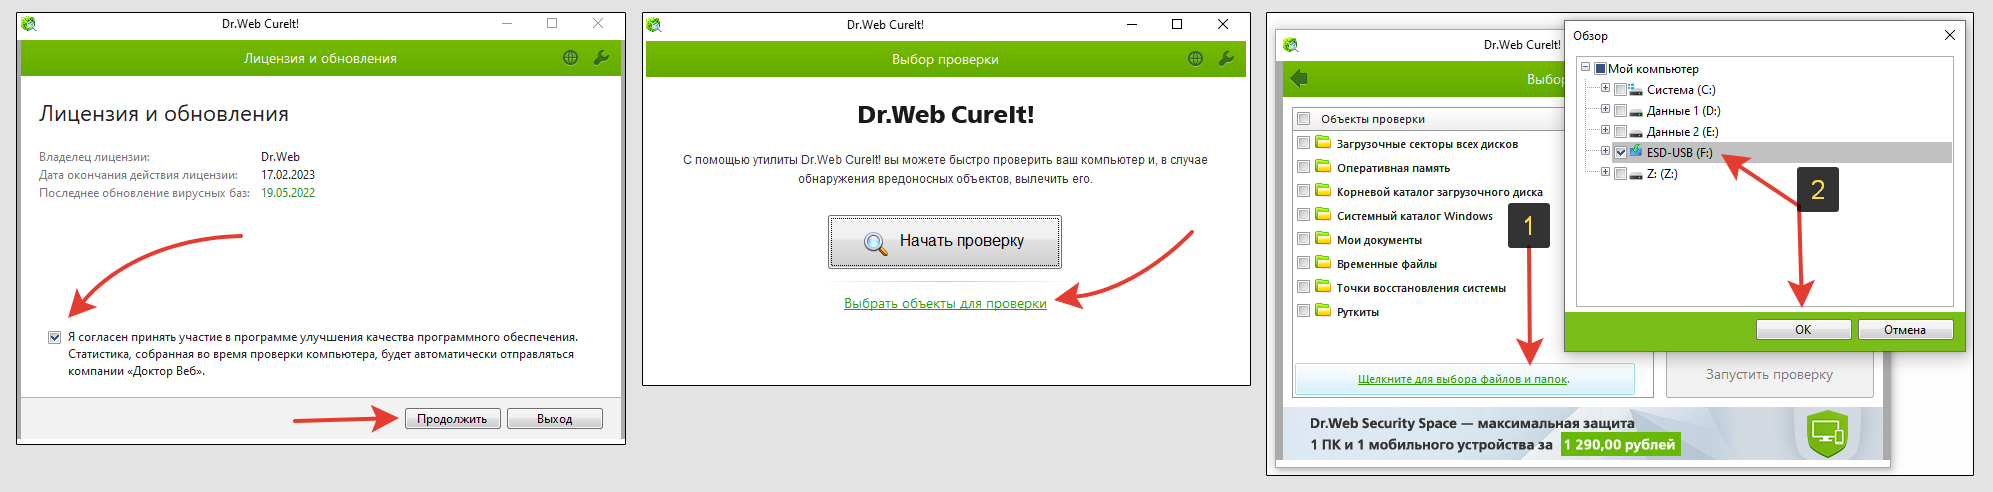 3 окна для запуска сканирования на вирусы через DrWeb CureIt.